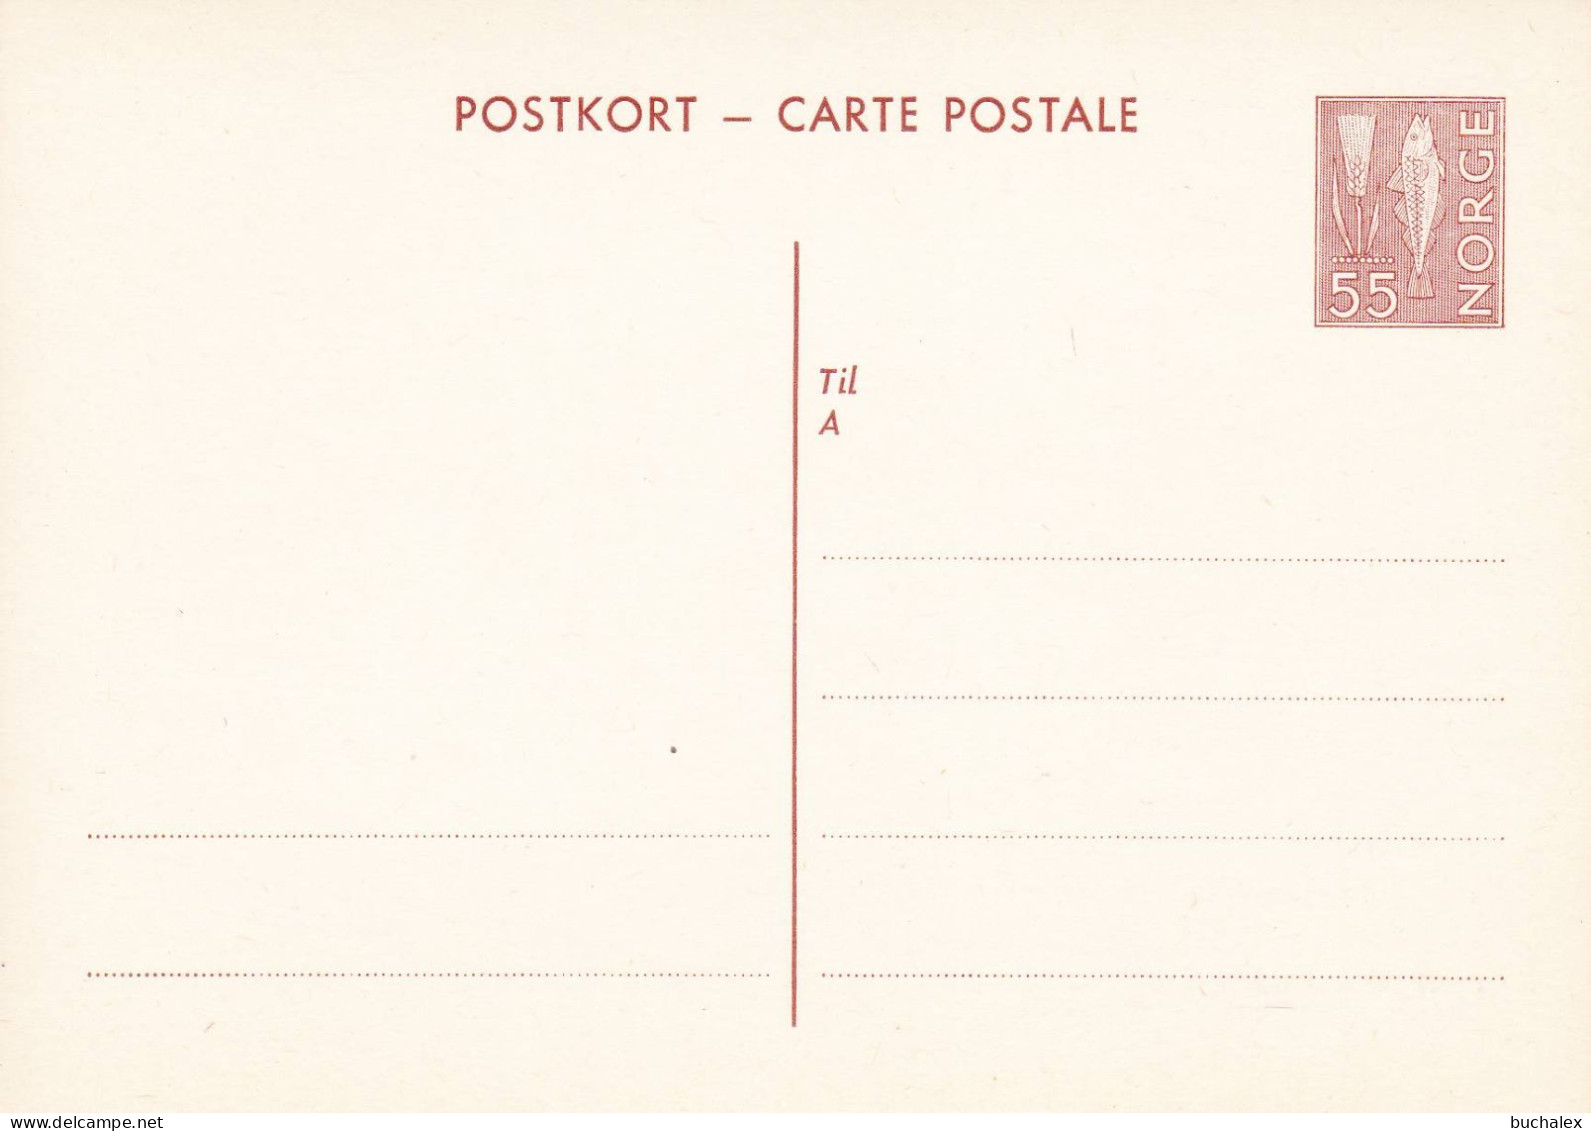 Norwegen Postkort 129 Ungelaufen - Ganzsachen